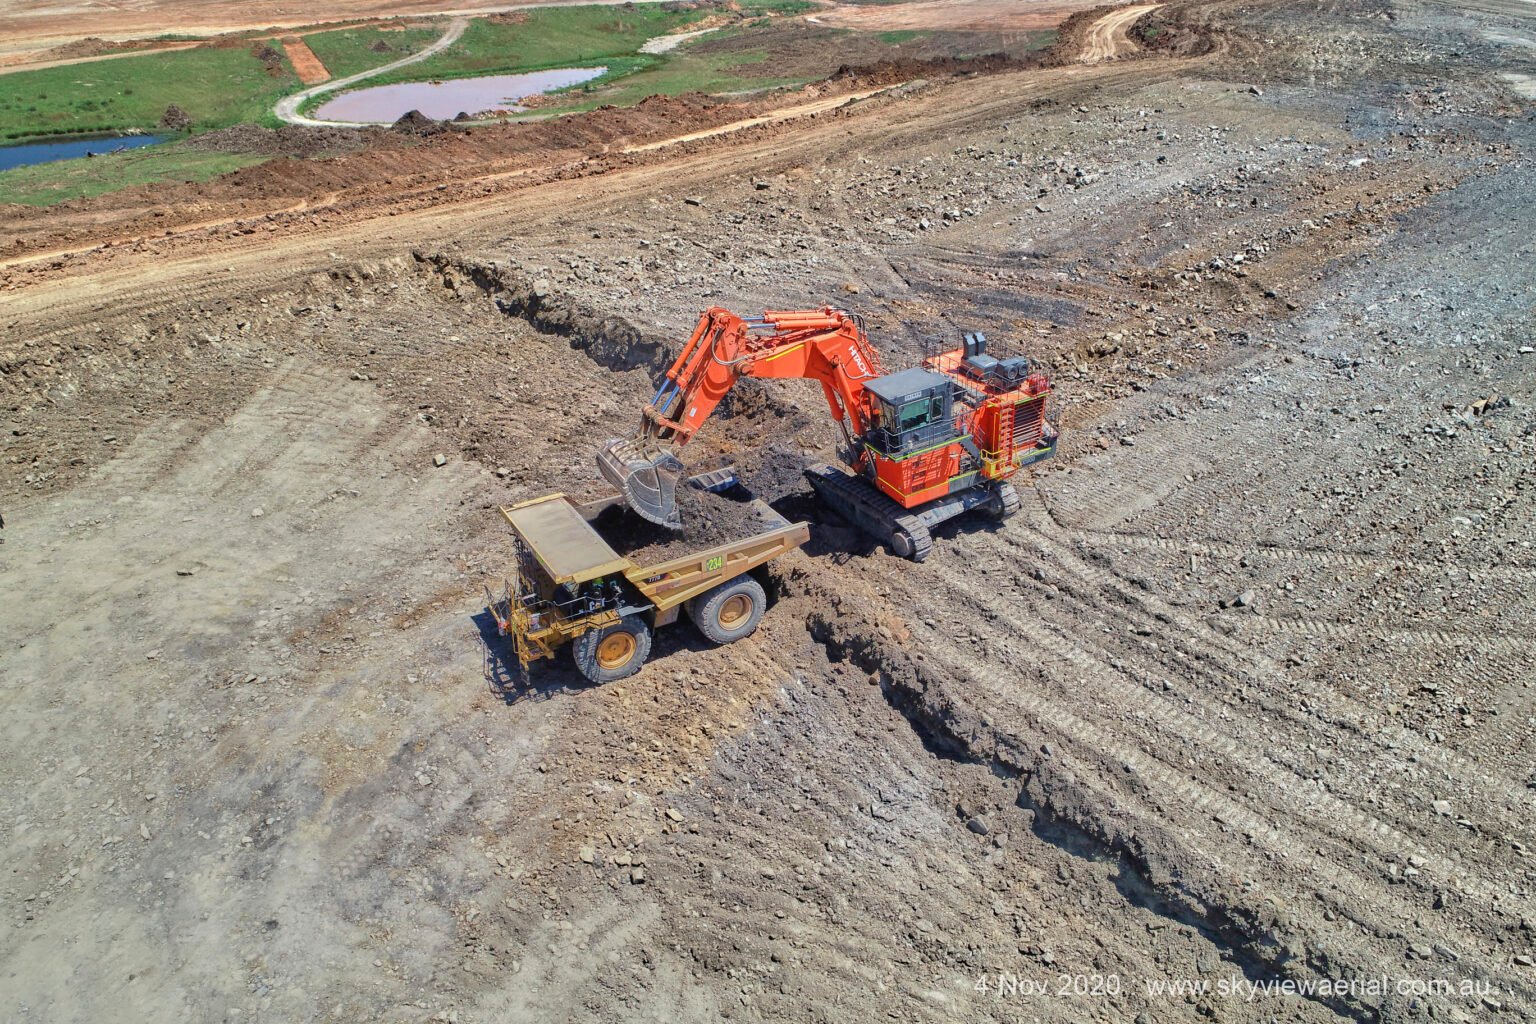 190t-Excavator-loading-777-1536x1024